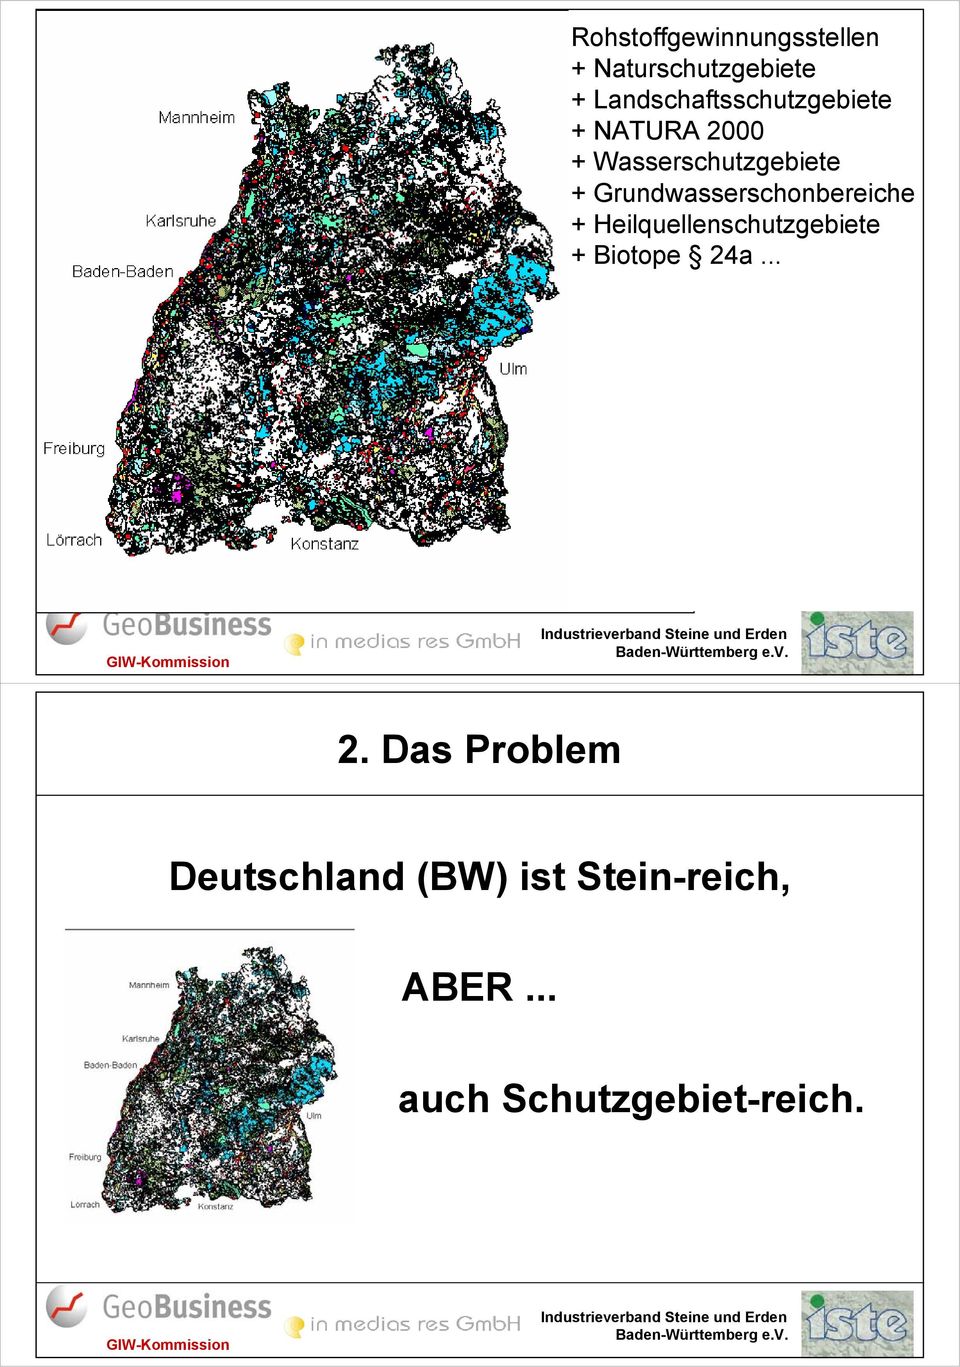 Grundwasserschonbereiche + Heilquellenschutzgebiete + Biotope 24a.